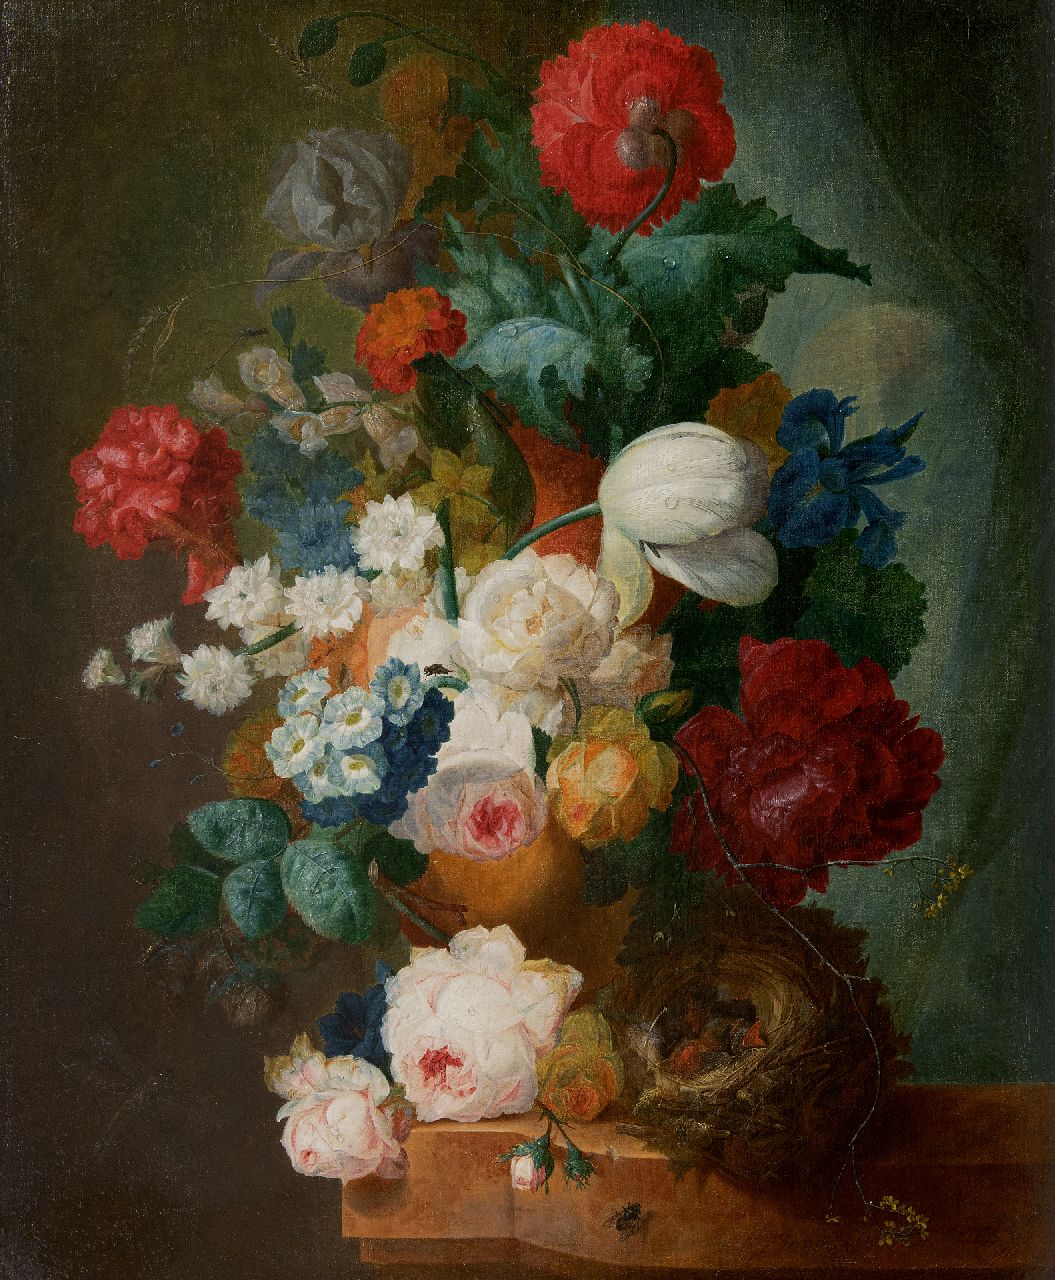 Os J. van | Jan van Os | Gemälde zum Verkauf angeboten | Stillleben mit Rosen, Mohnblumen und Vogelnest, Öl auf Leinwand 66,3 x 55,0 cm, Unterzeichnet u.l. und circa 1765